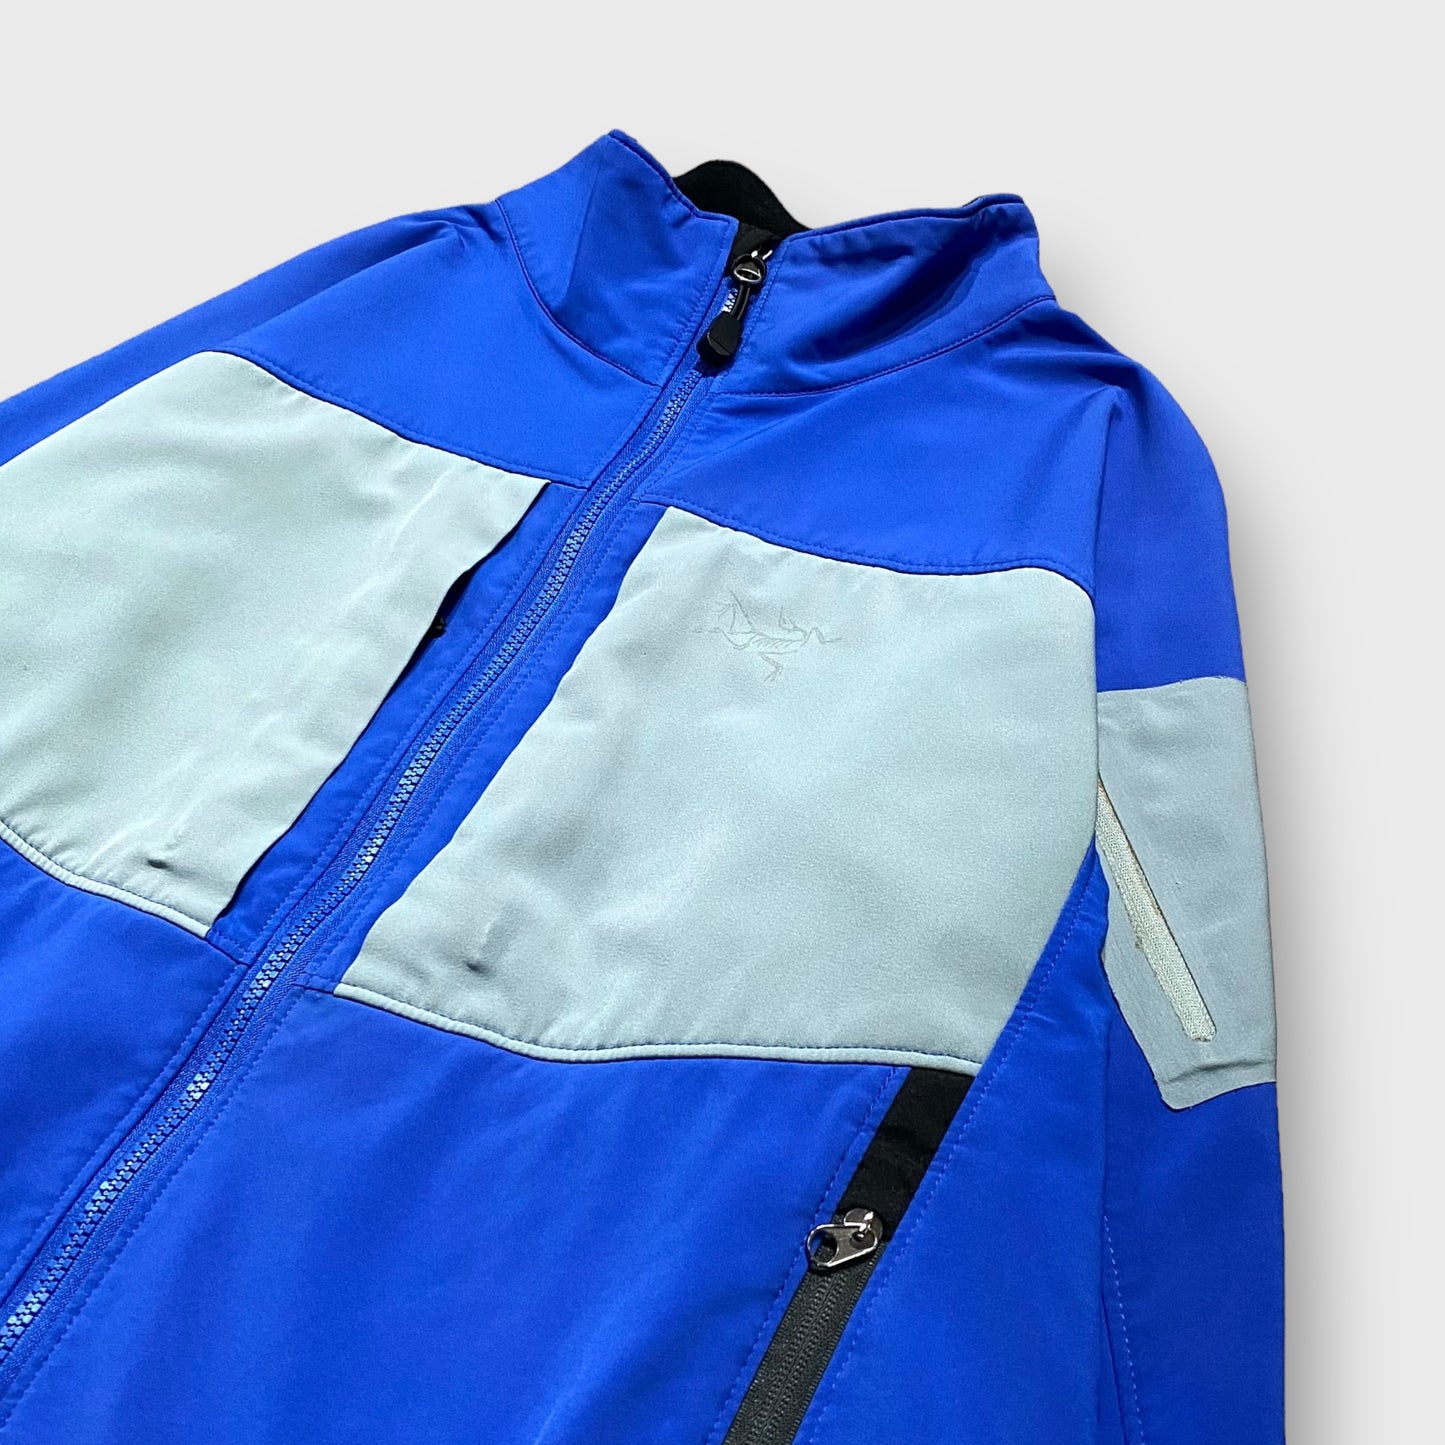 90-00's "Arc'teryx" Gamma jacket